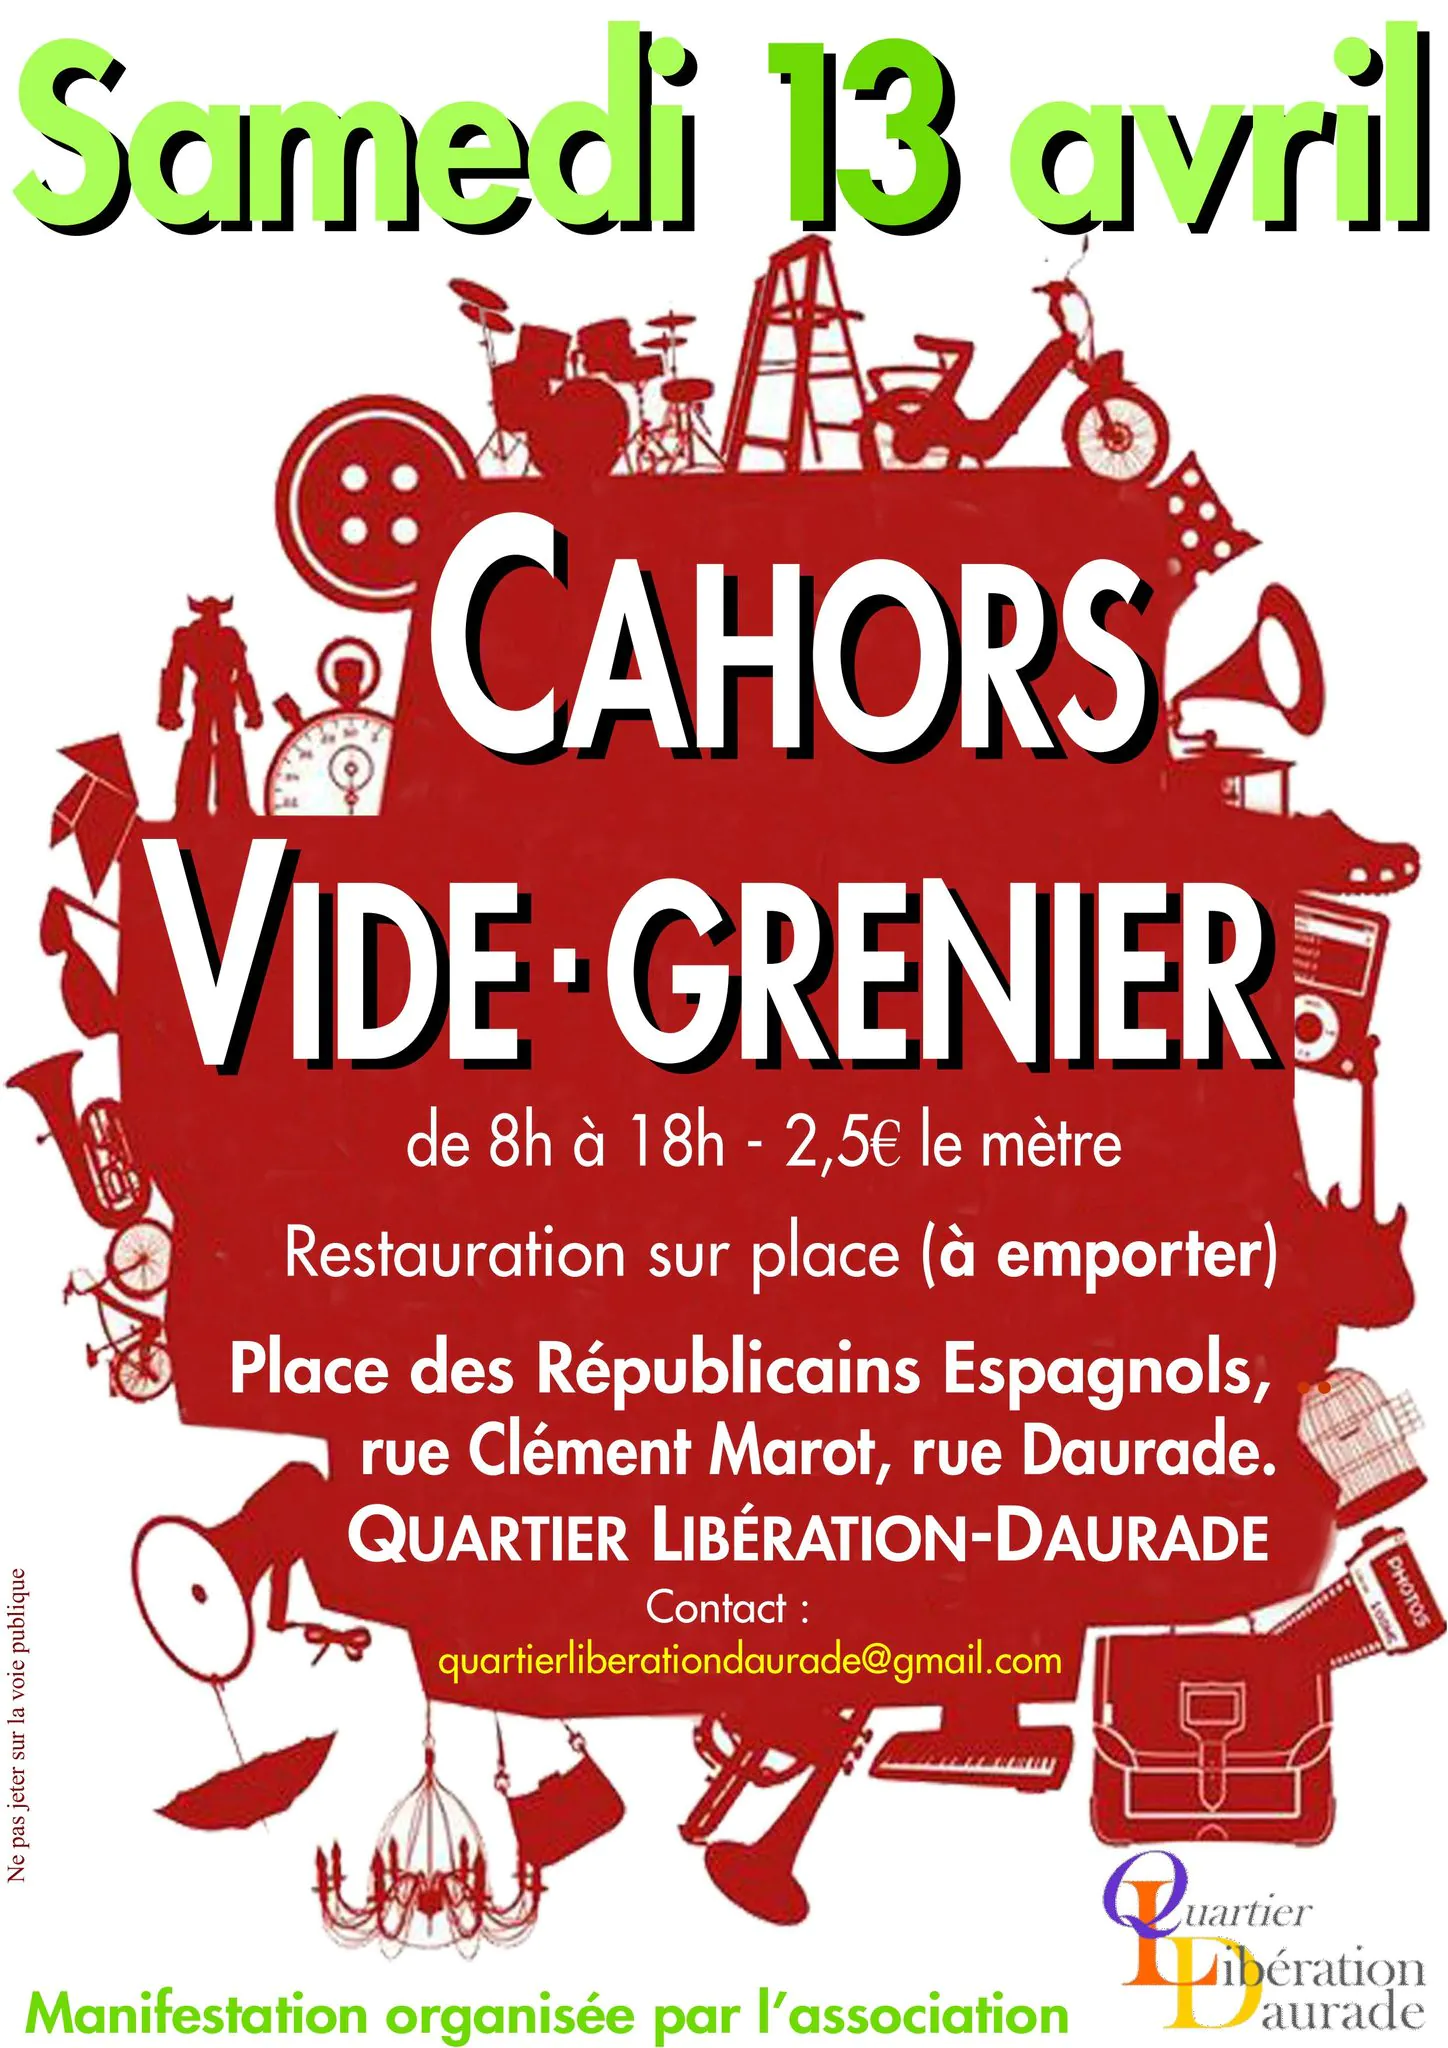 Vide-Greniers dans le quartier Libération-Daurade à Cahors